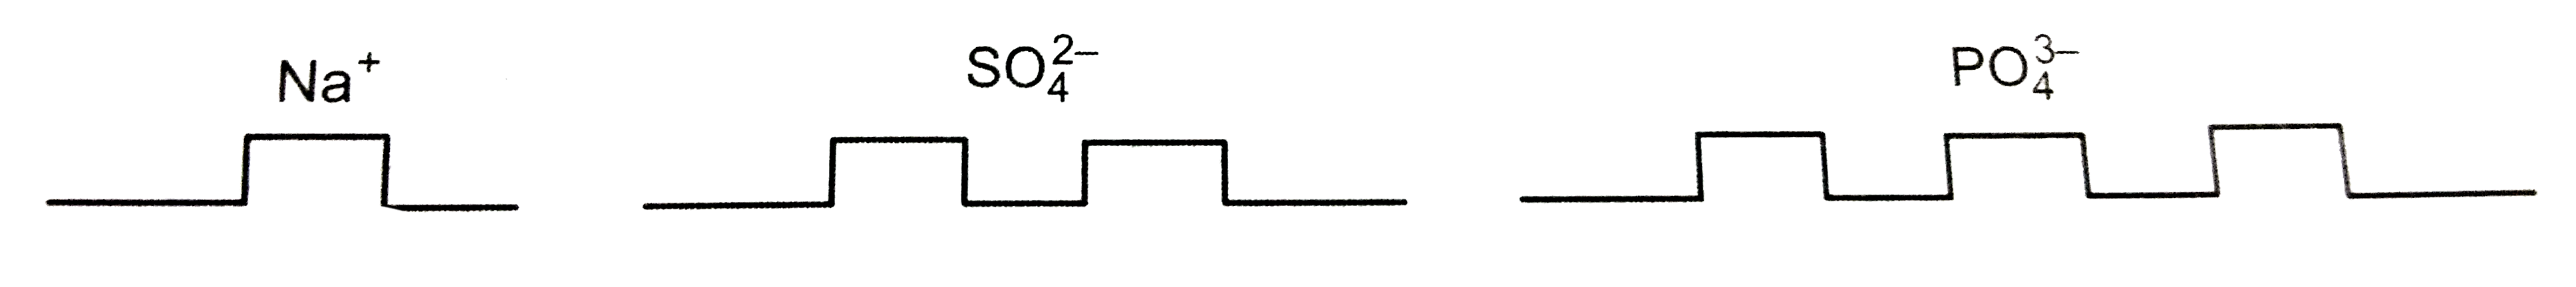 दवाओं के उस पैक को जिसमें से गोलियाँ निकाल ली गई हों, लीजिए | जैसा की नीचे चित्र में दिखाया गया है, तत्व की संयोजकता के अनुसार उसे समूह में काट लीजिए | अब आप एक प्रकार के आयन को दूसरे प्रकार के आयनों में लगाकर सूत्र बना सकते हैं |    उदाहरणार्थ :-      सोडियम सल्फेट के सूत्र के लिए :   2 सोडियम आयनों को एक सल्फेट आयन पर लगाइए | अत: सूत्र Na(2)SO(4) होगा | अपने आप कीजिए सोडियम फॉस्फेट का सूत्र लिखिए |